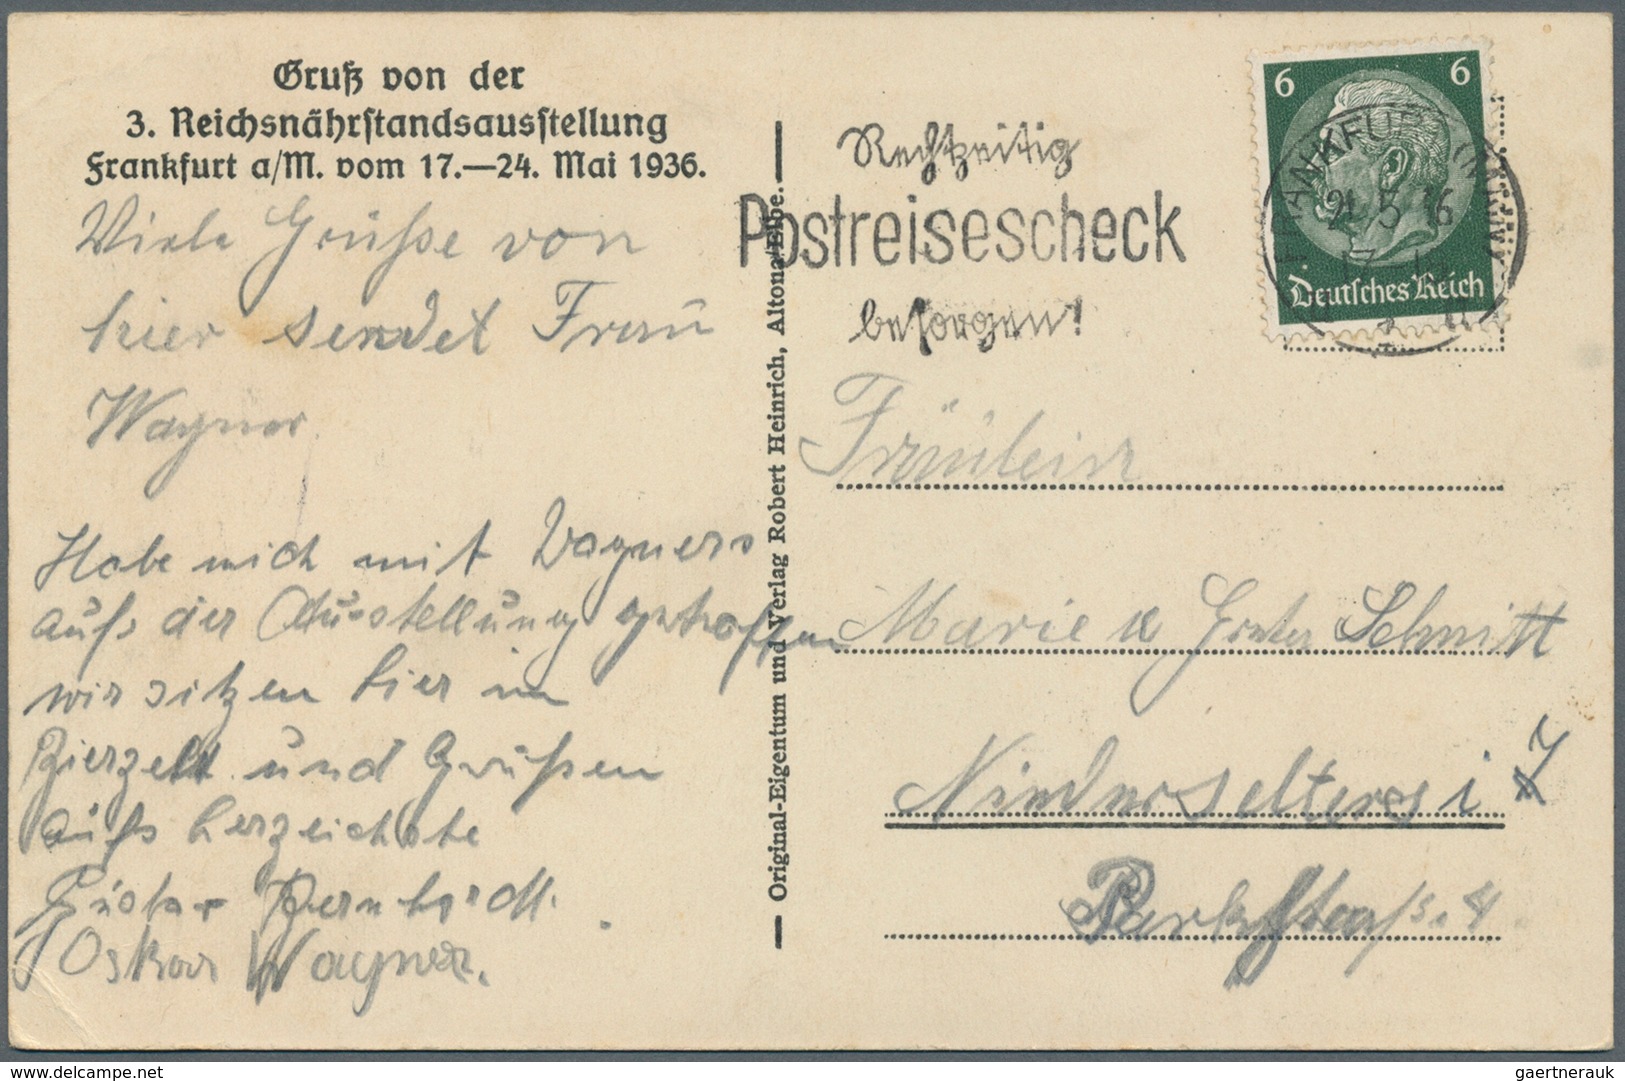 31776 Deutsches Reich - Ganzsachen: 1920/1944 (ca.), Posten mit über 150 gelaufenen Postkarten Deutsches R